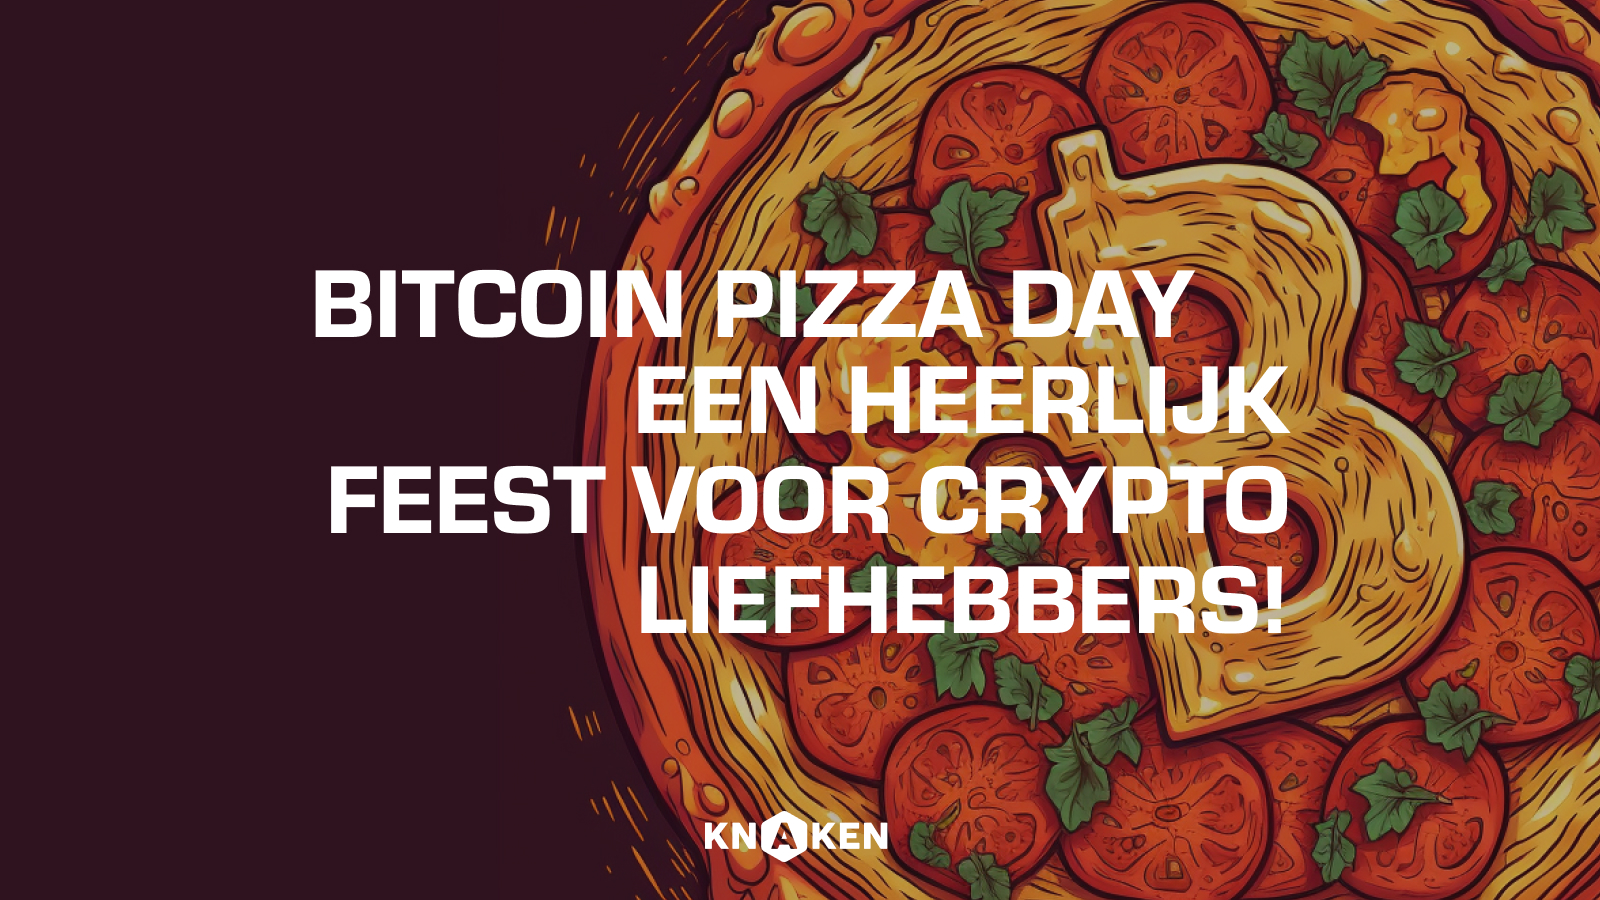 Bitcoin Pizza Day: Een heerlijk feest voor cryptoliefhebbers!